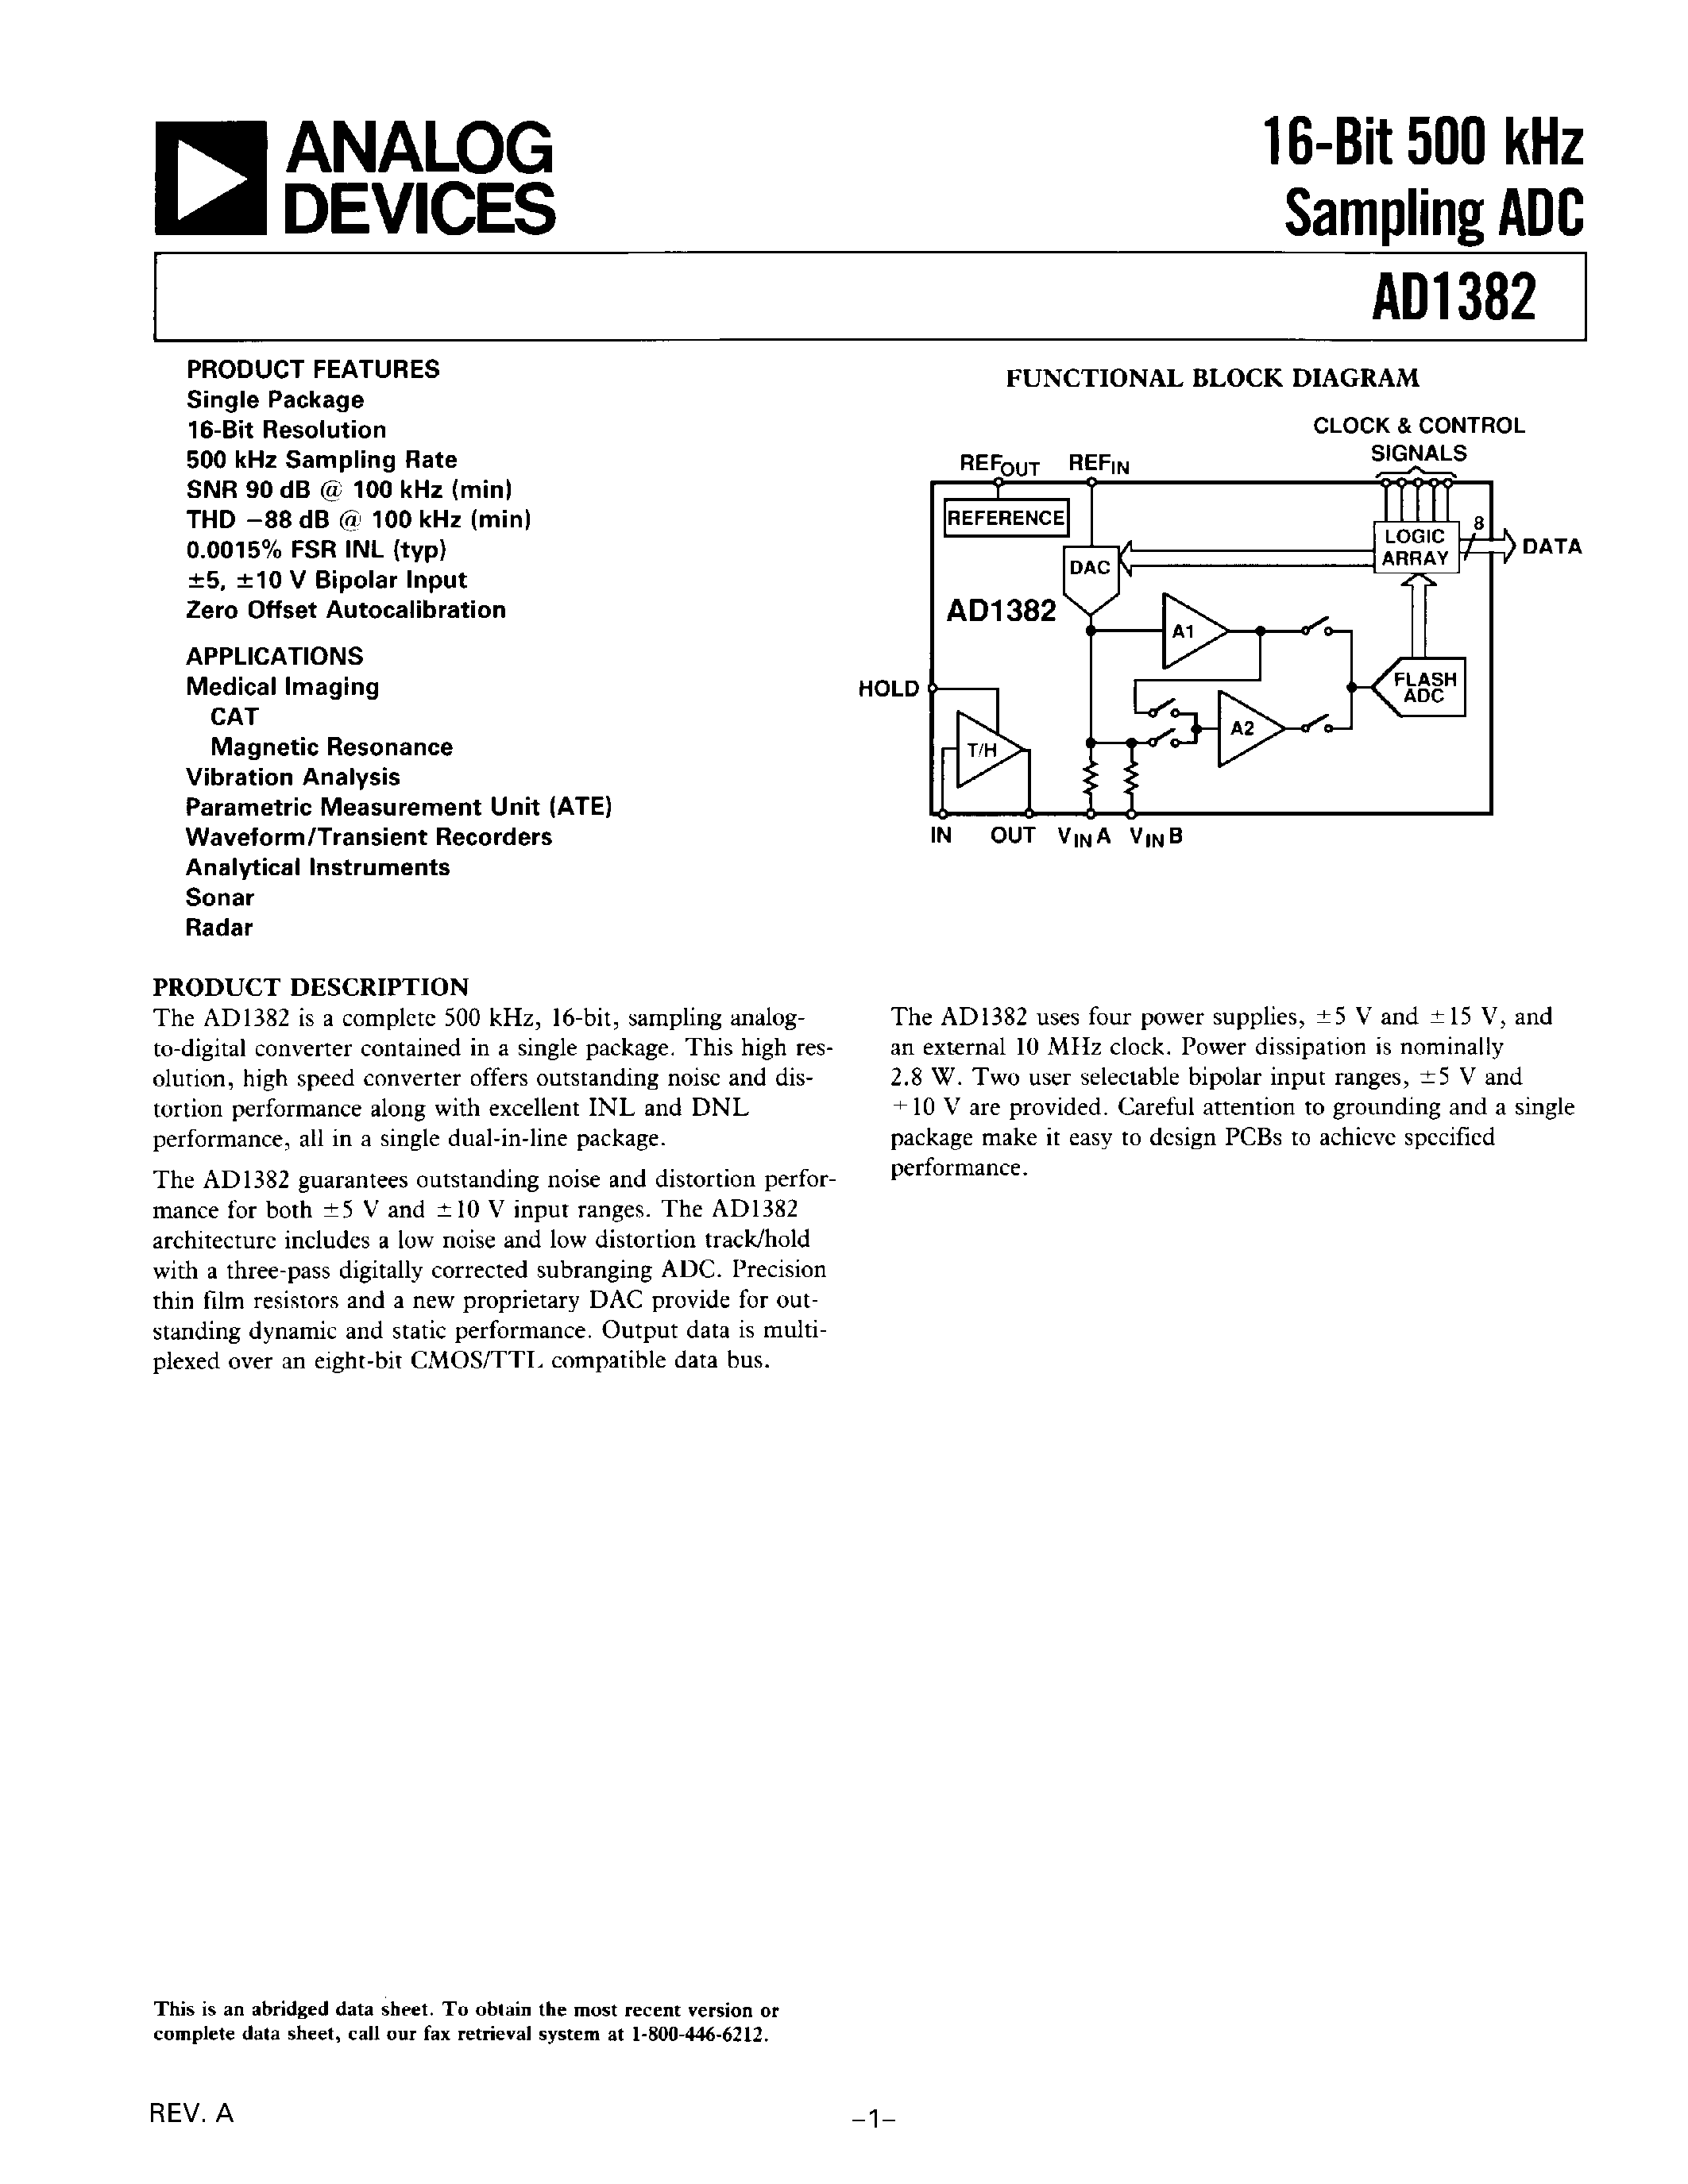 Datasheet AD1392 - 16-Bit 500 kHz Sampling ADC page 1